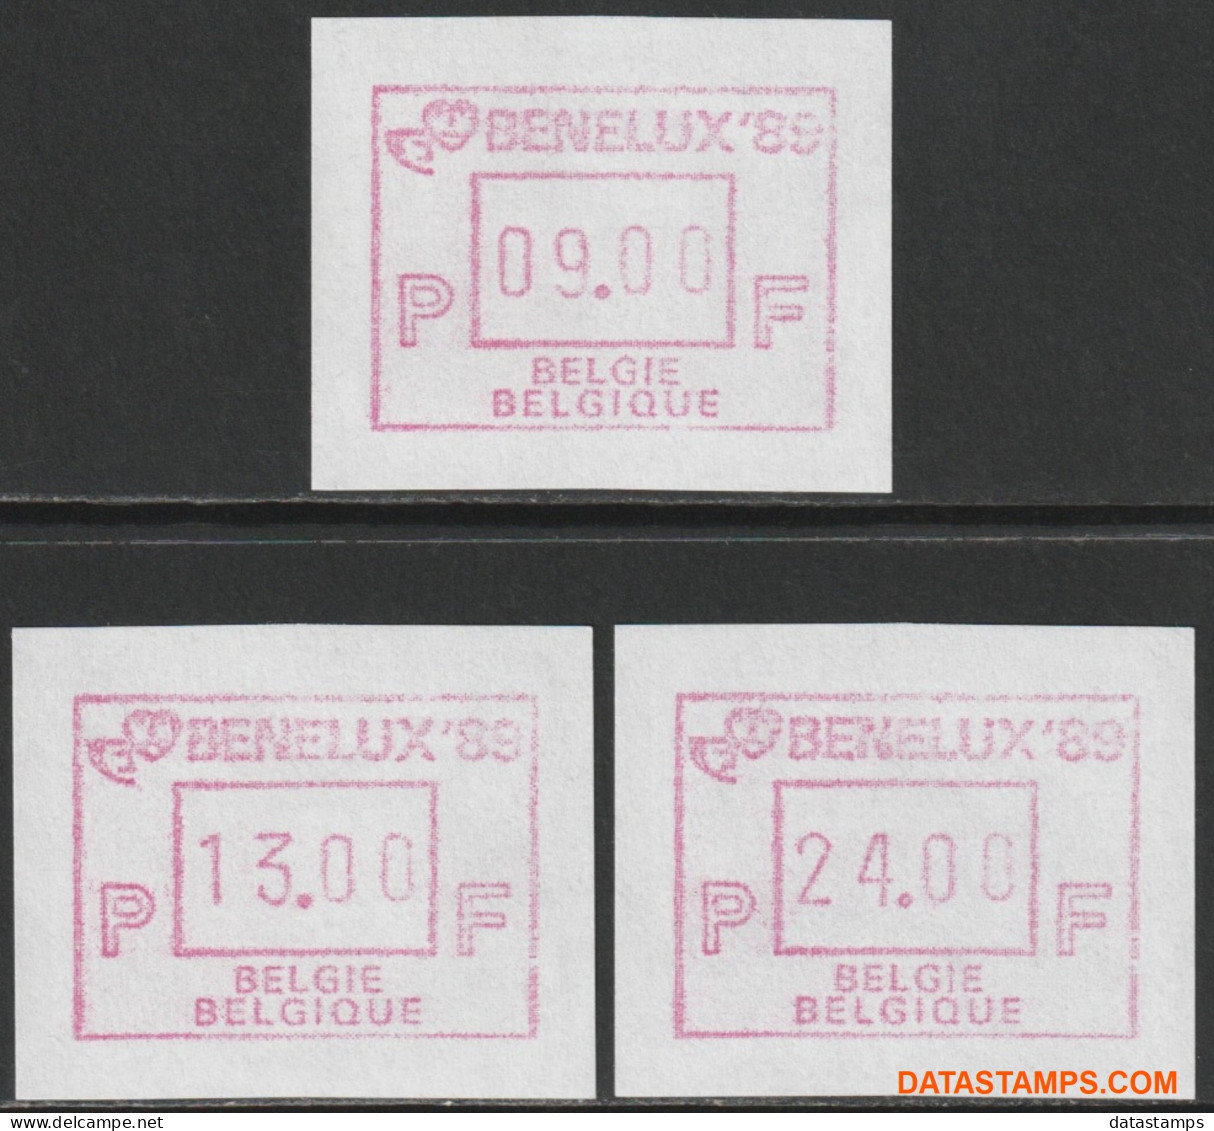 België 1989 - Mi:autom 19, Yv:TD 25, OBP:ATM 76 Set, Machine Stamp - XX - Benelux 89 9-13-24 - Mint